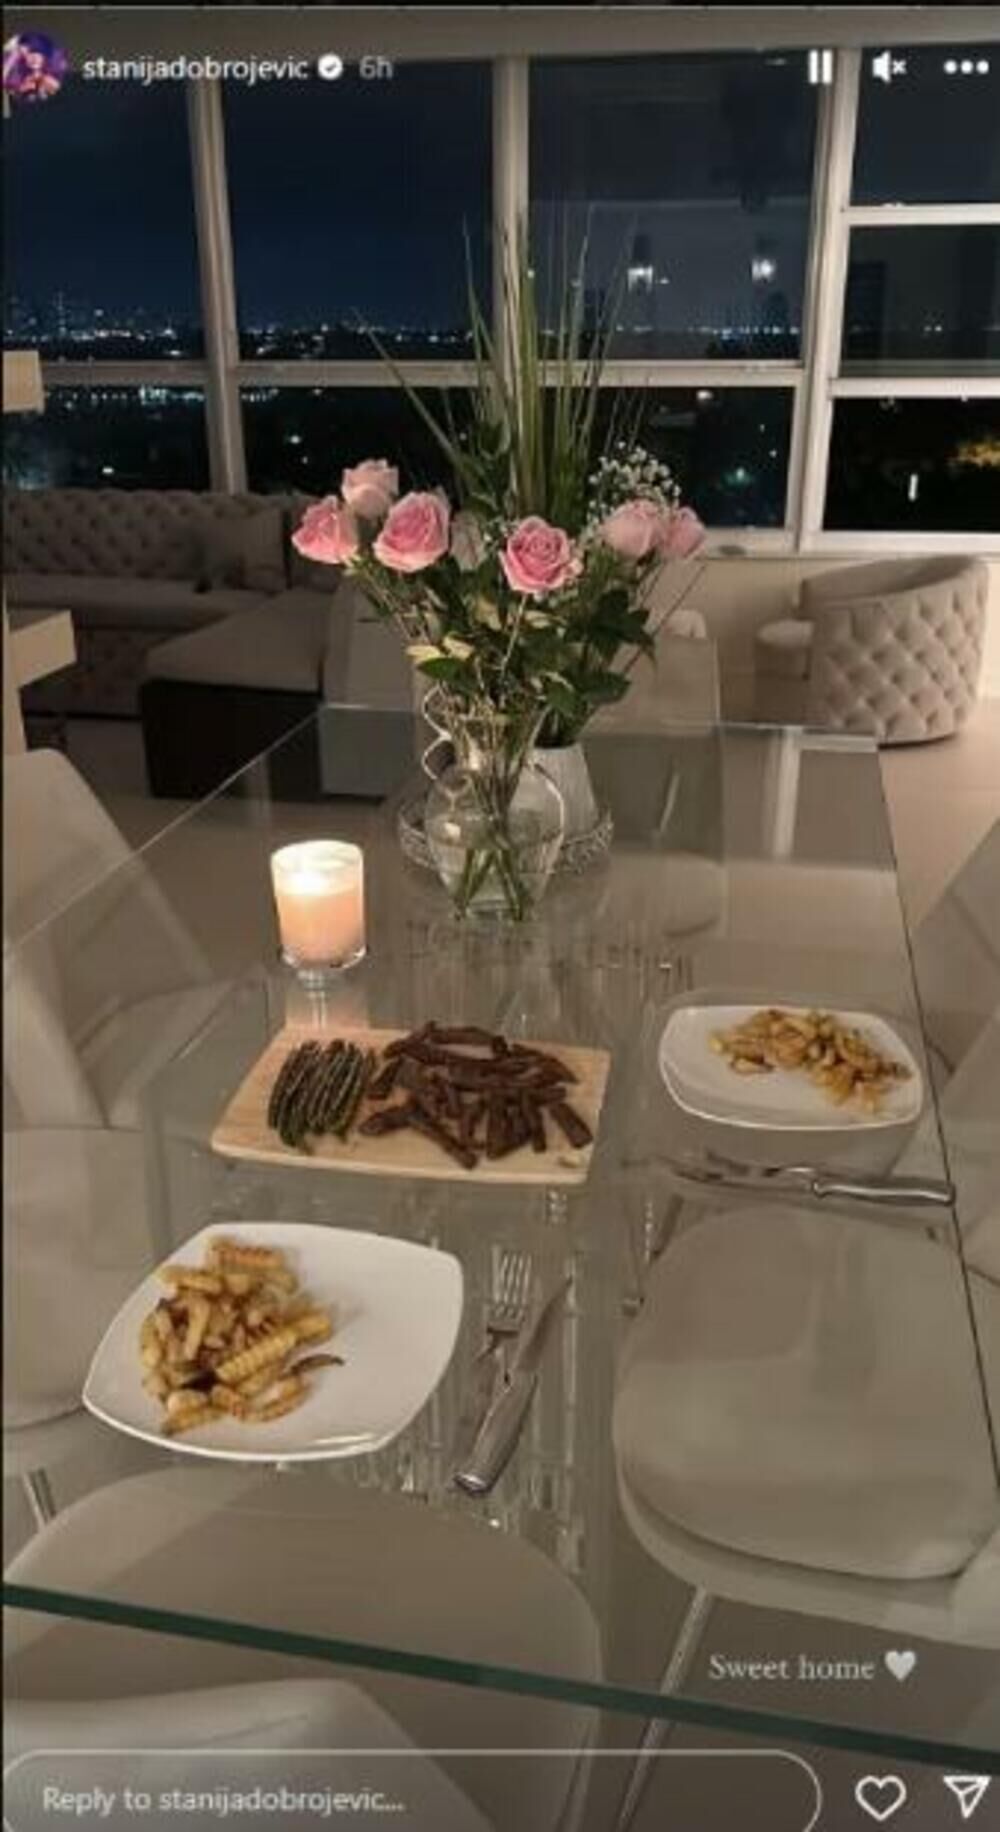 Stanija je podelila fotografiju romantične večere u stanu